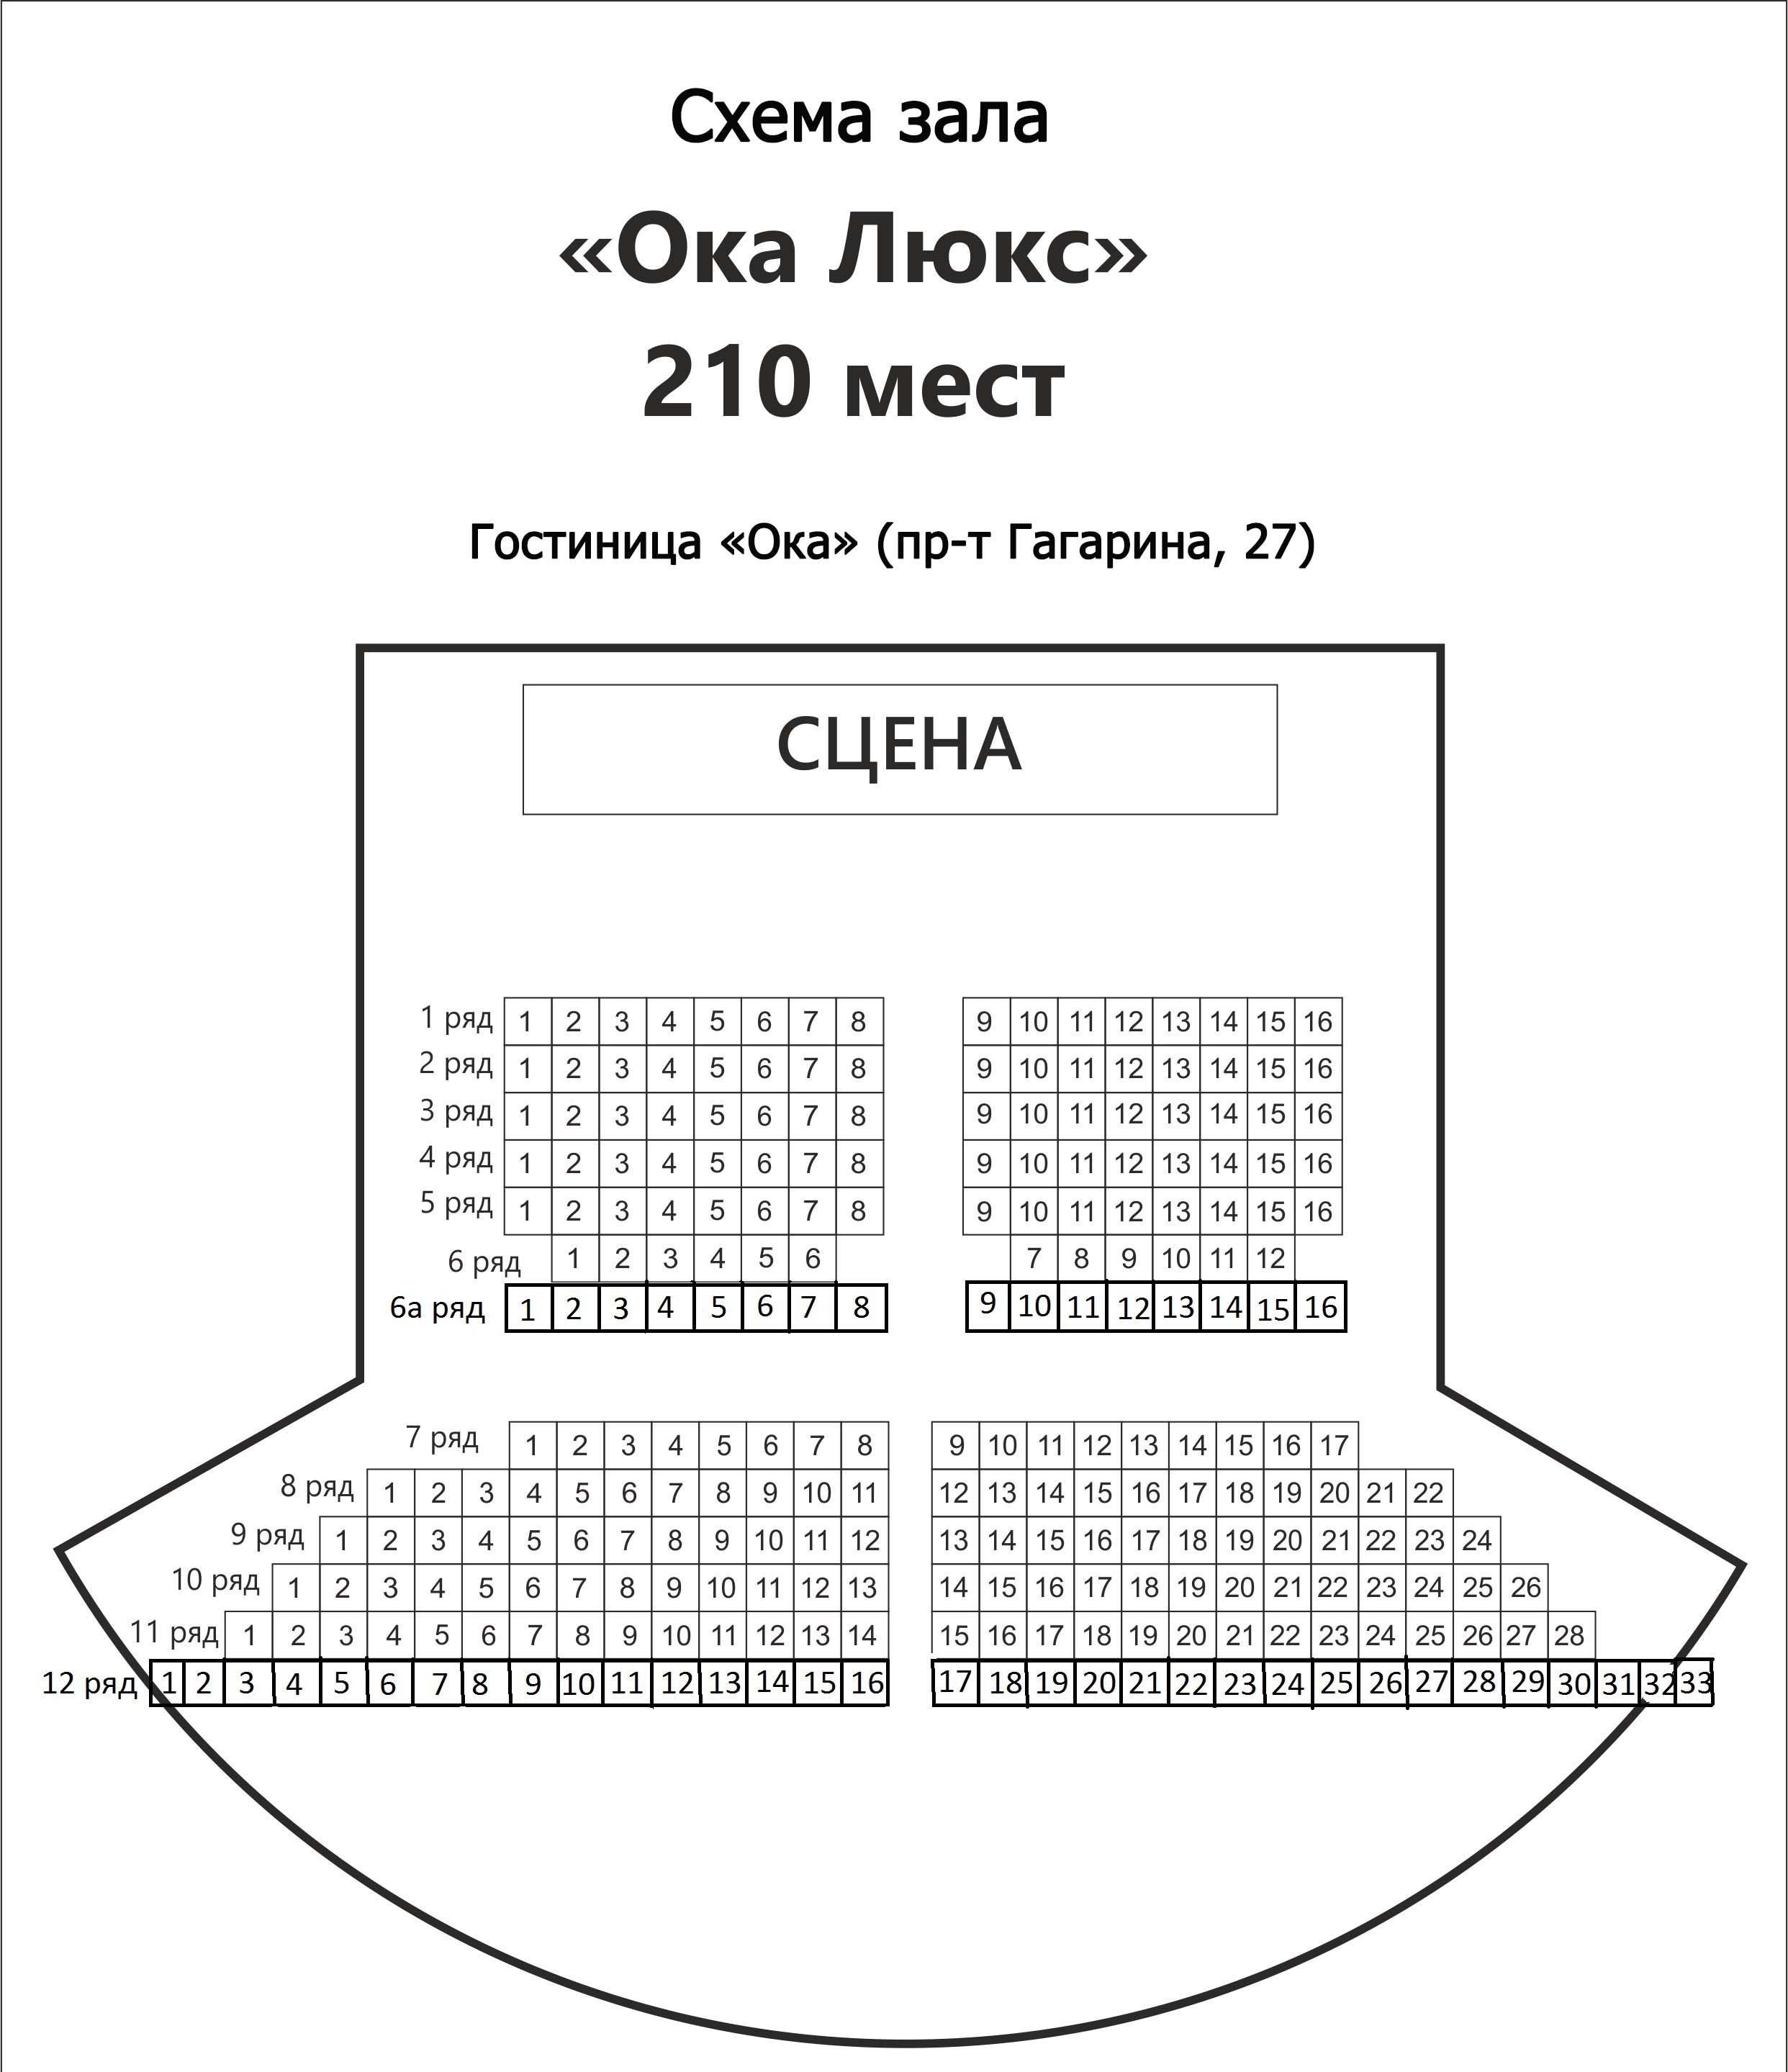 Схема зала Конференц-зал "Ока Люкс" (Нижний Новгород)